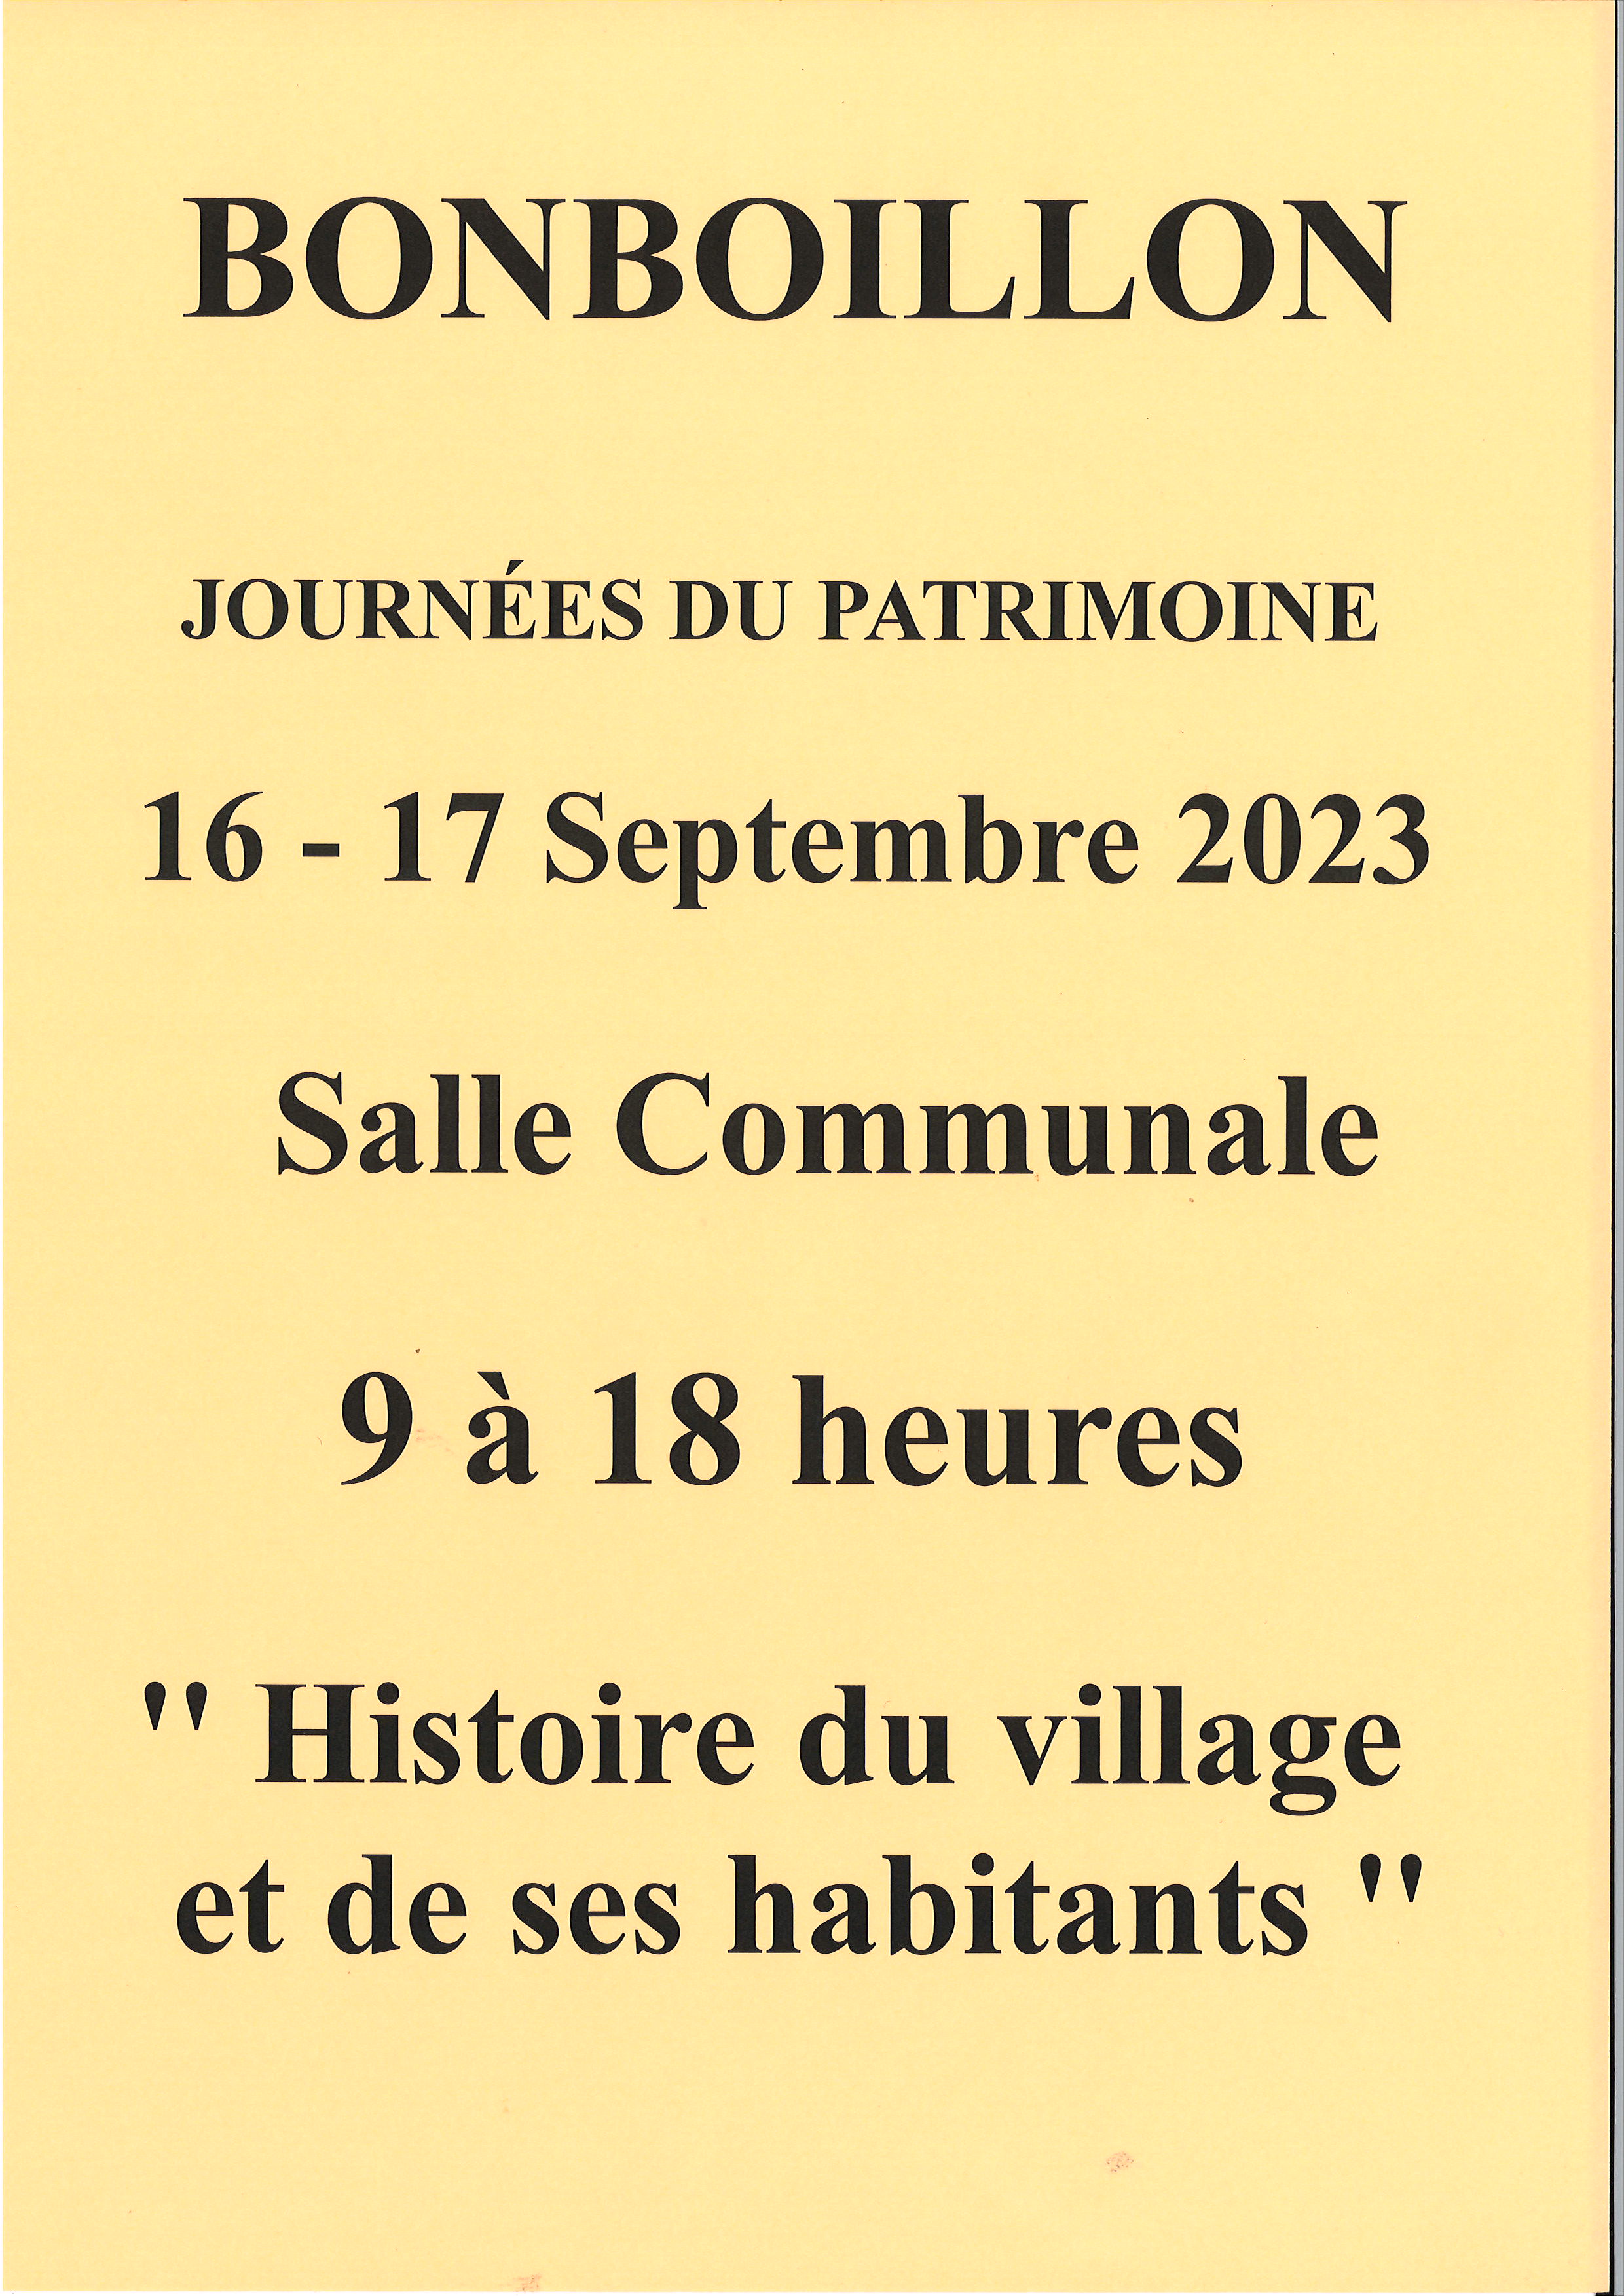 Journées du Patrimoine à Bonboillon